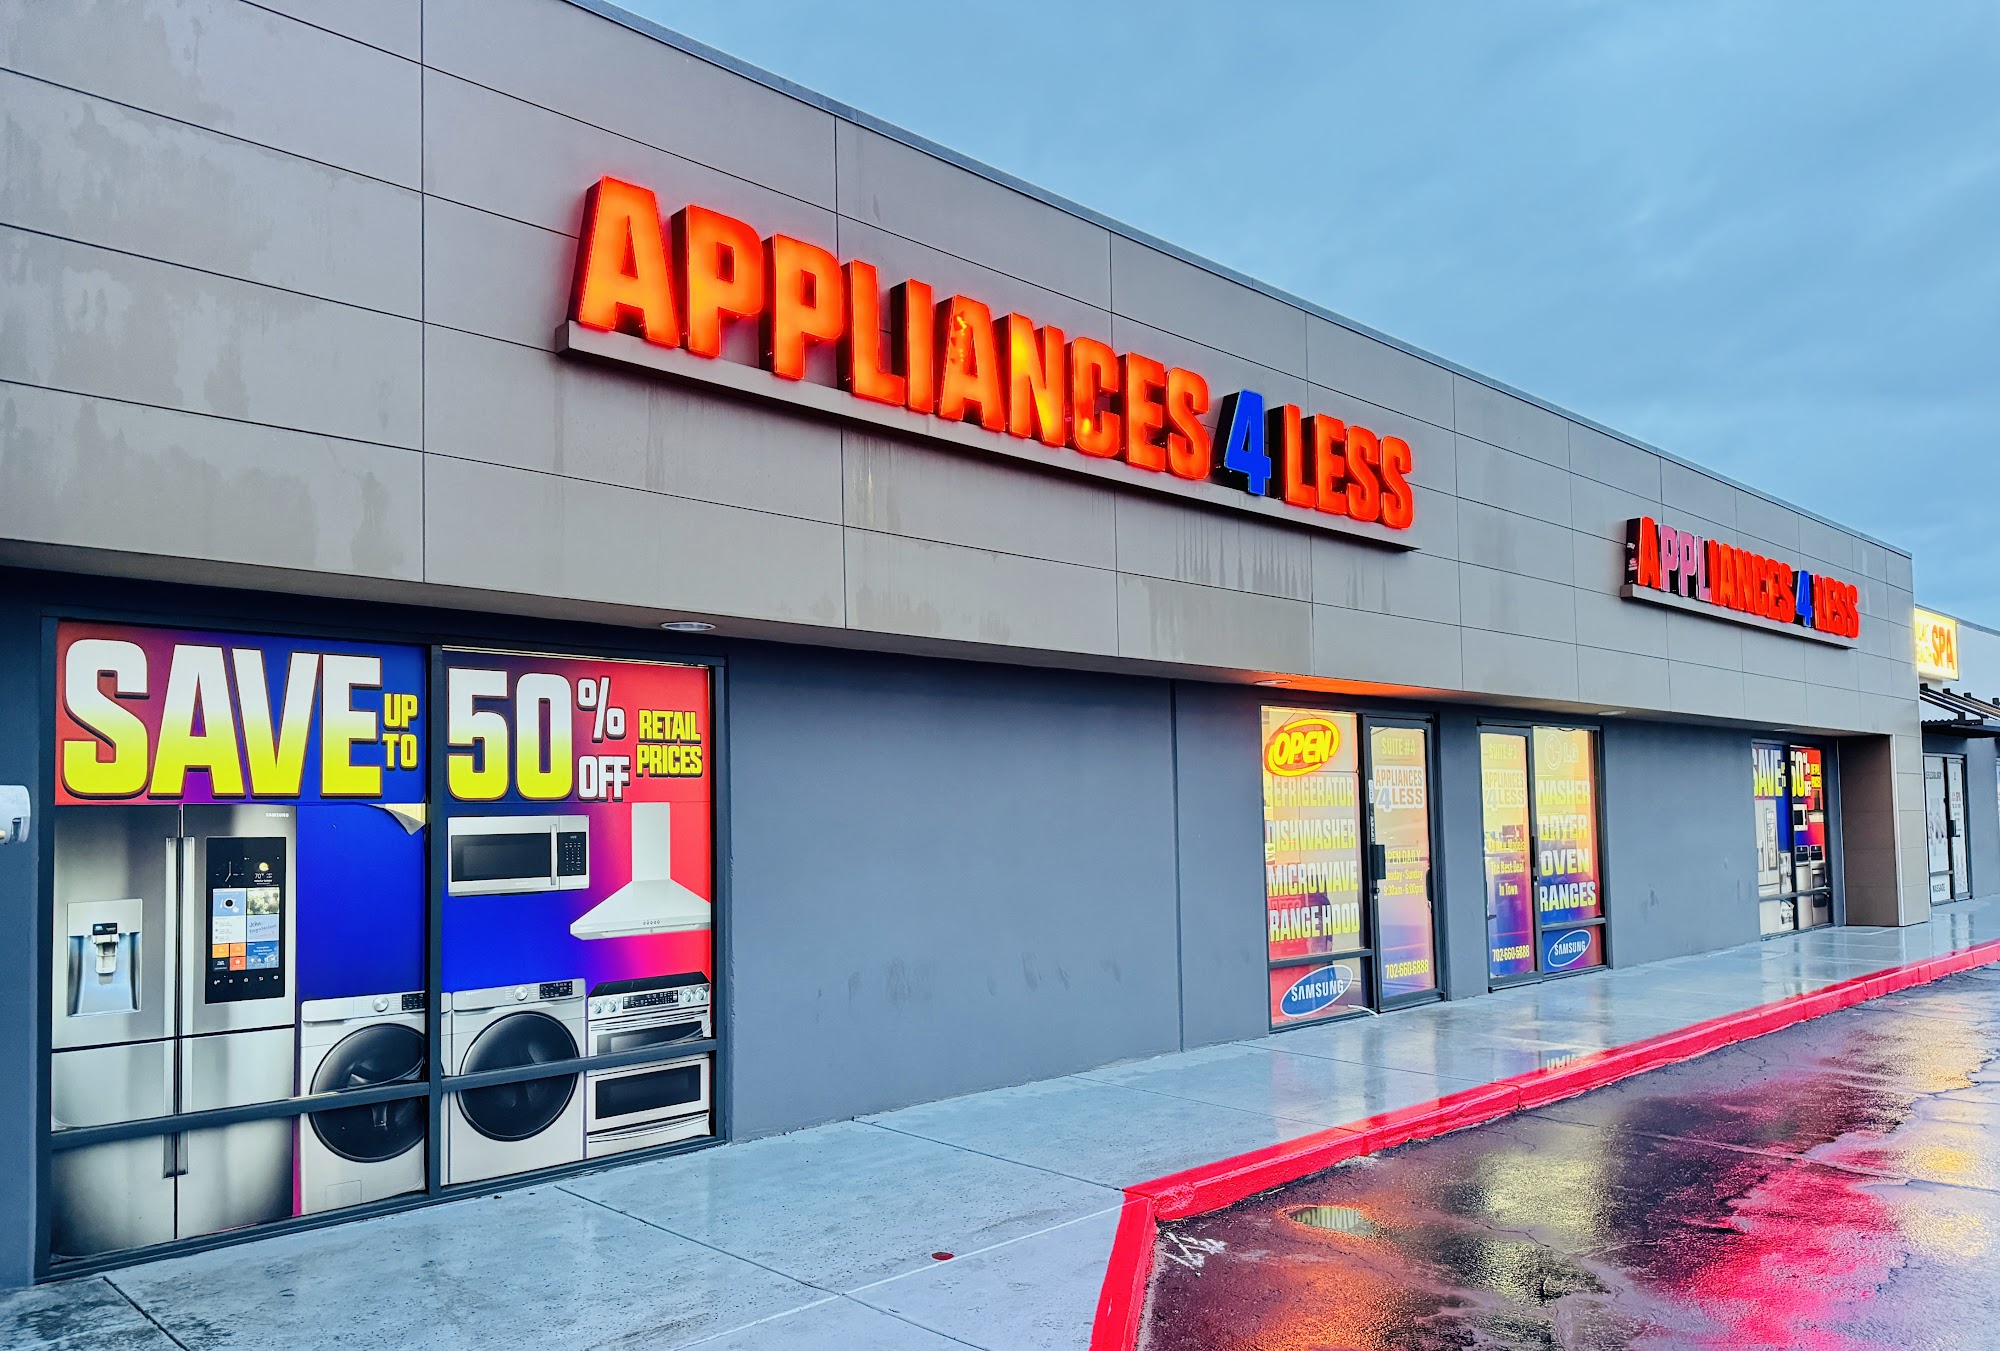 Appliances 4 Less--Las Vegas